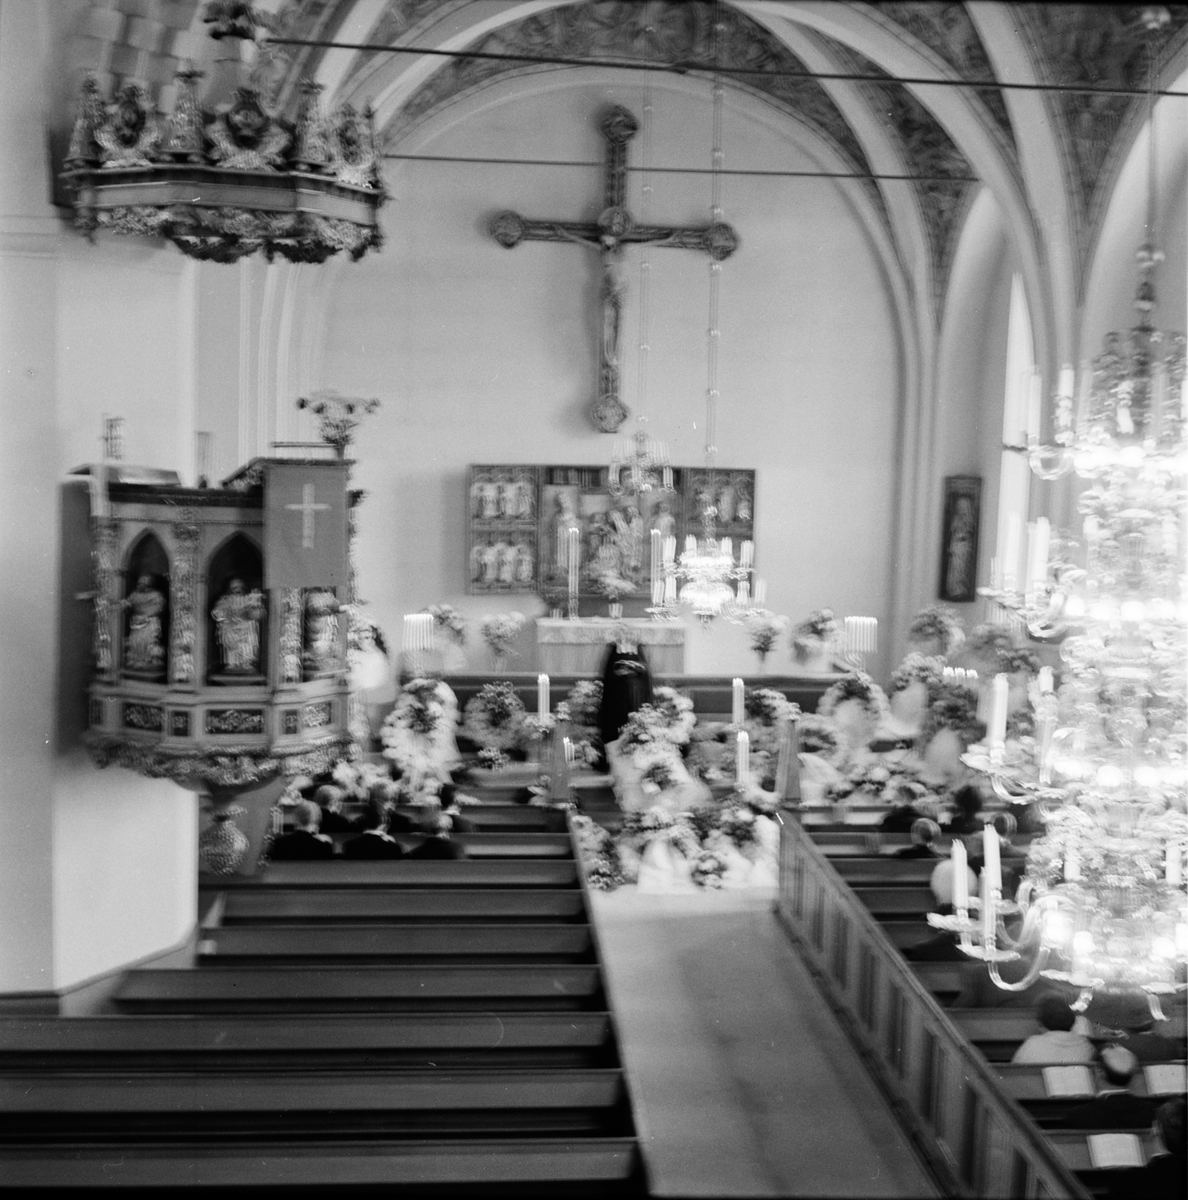 Stig Östs jordfästning i Bollnäs kyrka.
9/9-1966